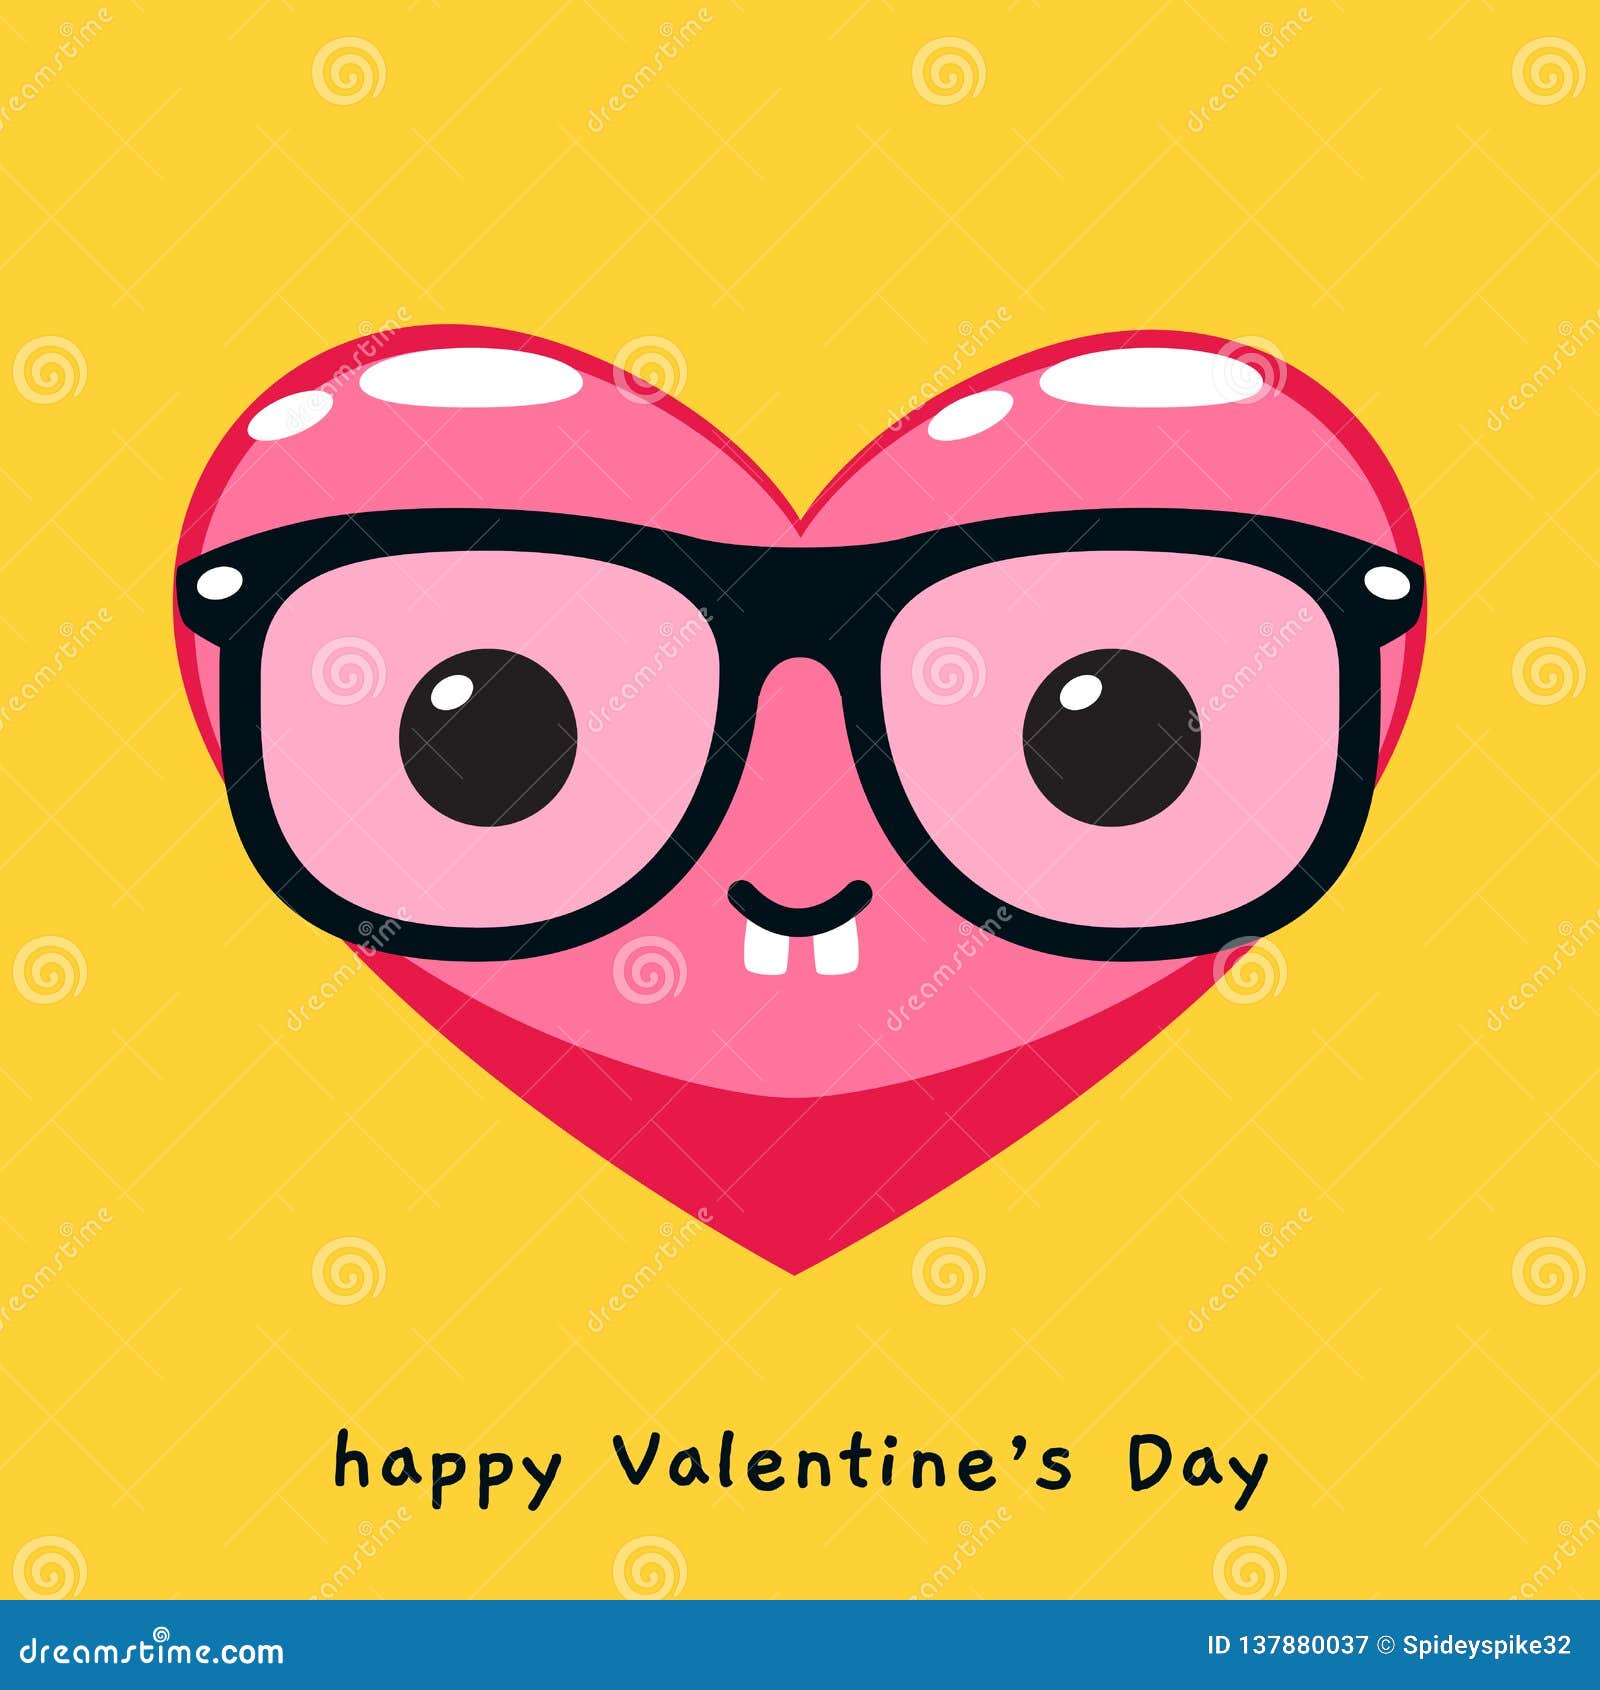 https://thumbs.dreamstime.com/z/nerd-heart-glasses-nerd-heart-glasses-vector-illustration-137880037.jpg